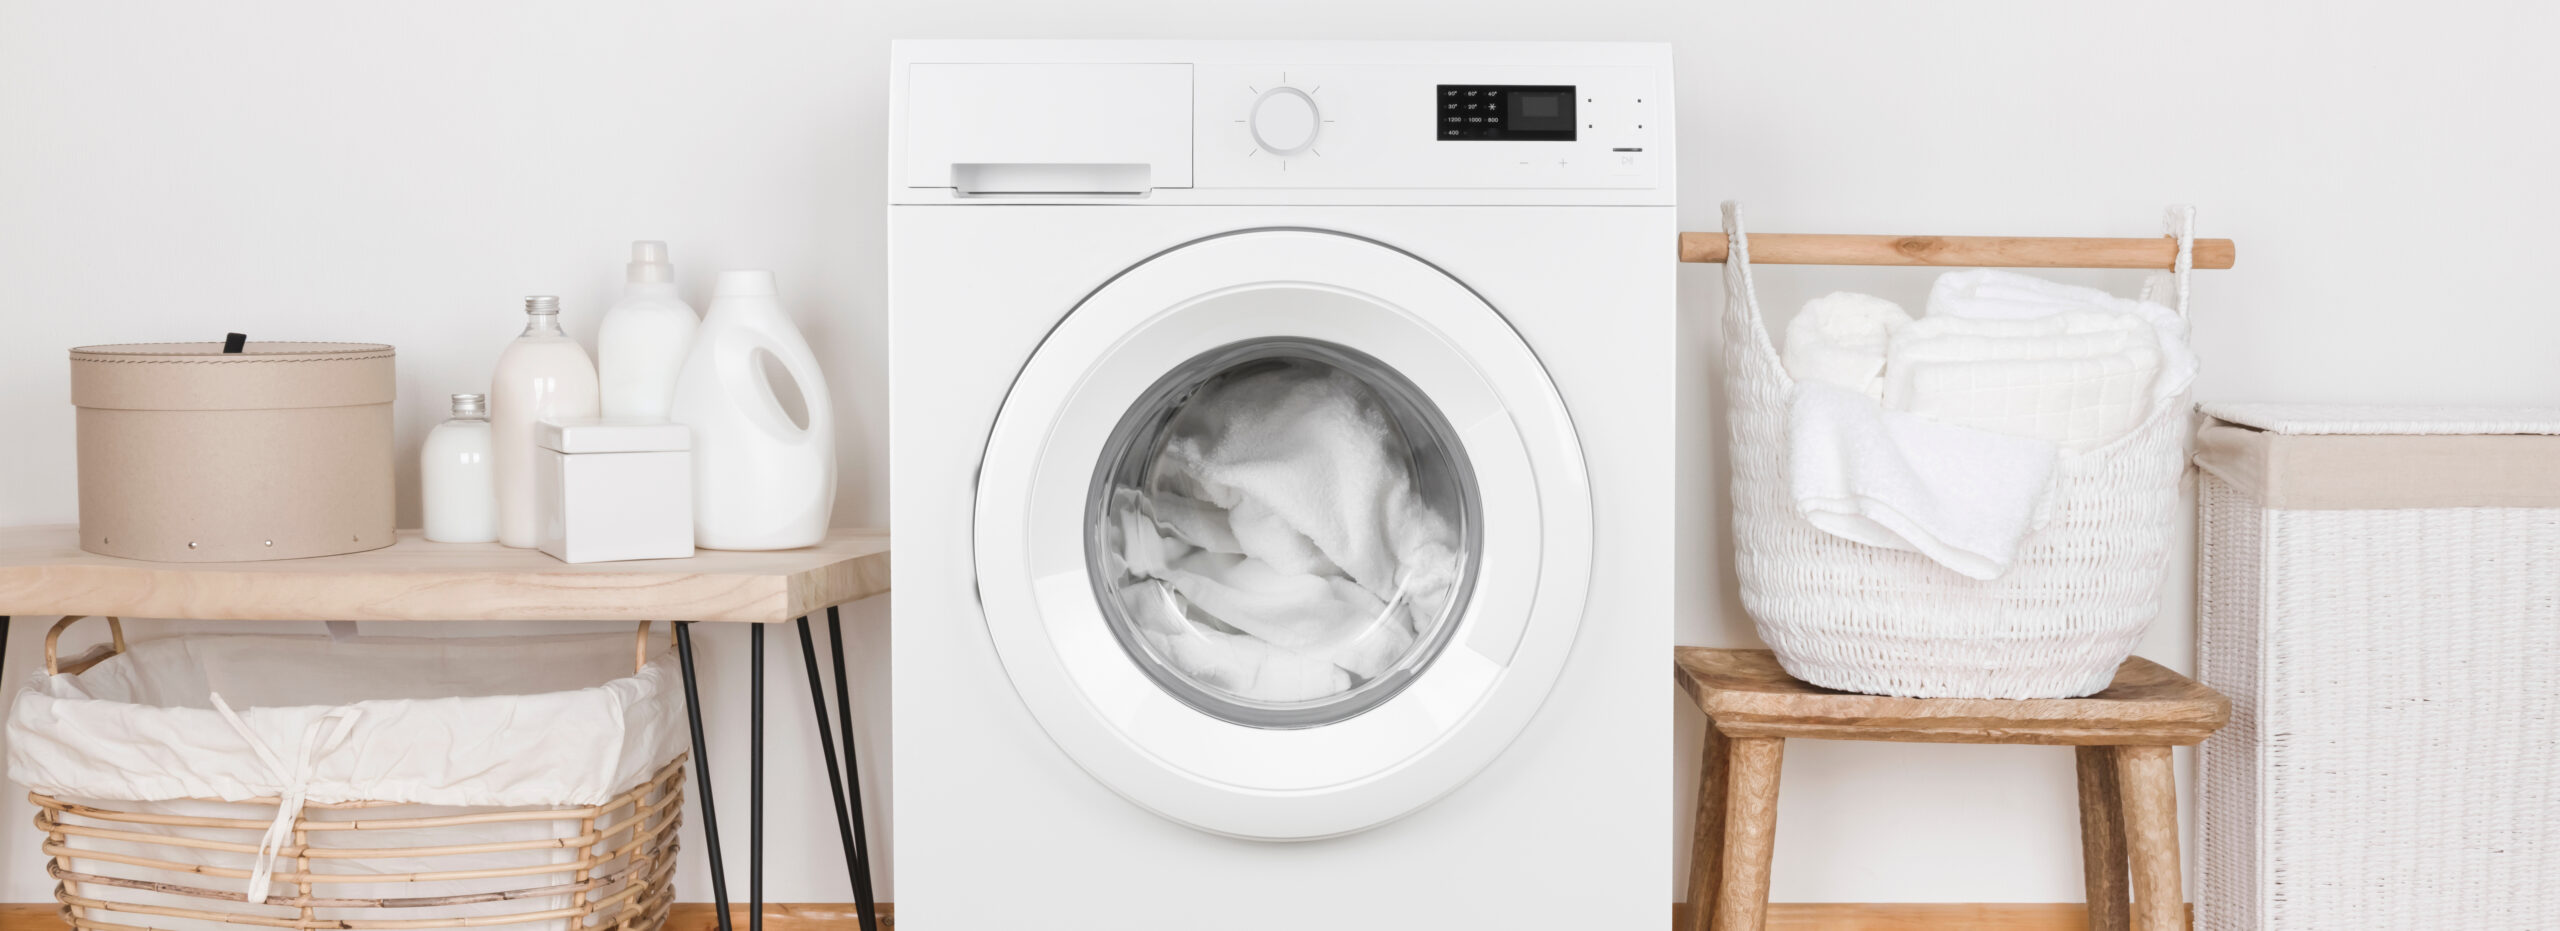 Terzijde leiderschap Rubber Stinkende wasmachine? Dit kunt u doen - MAX Vandaag